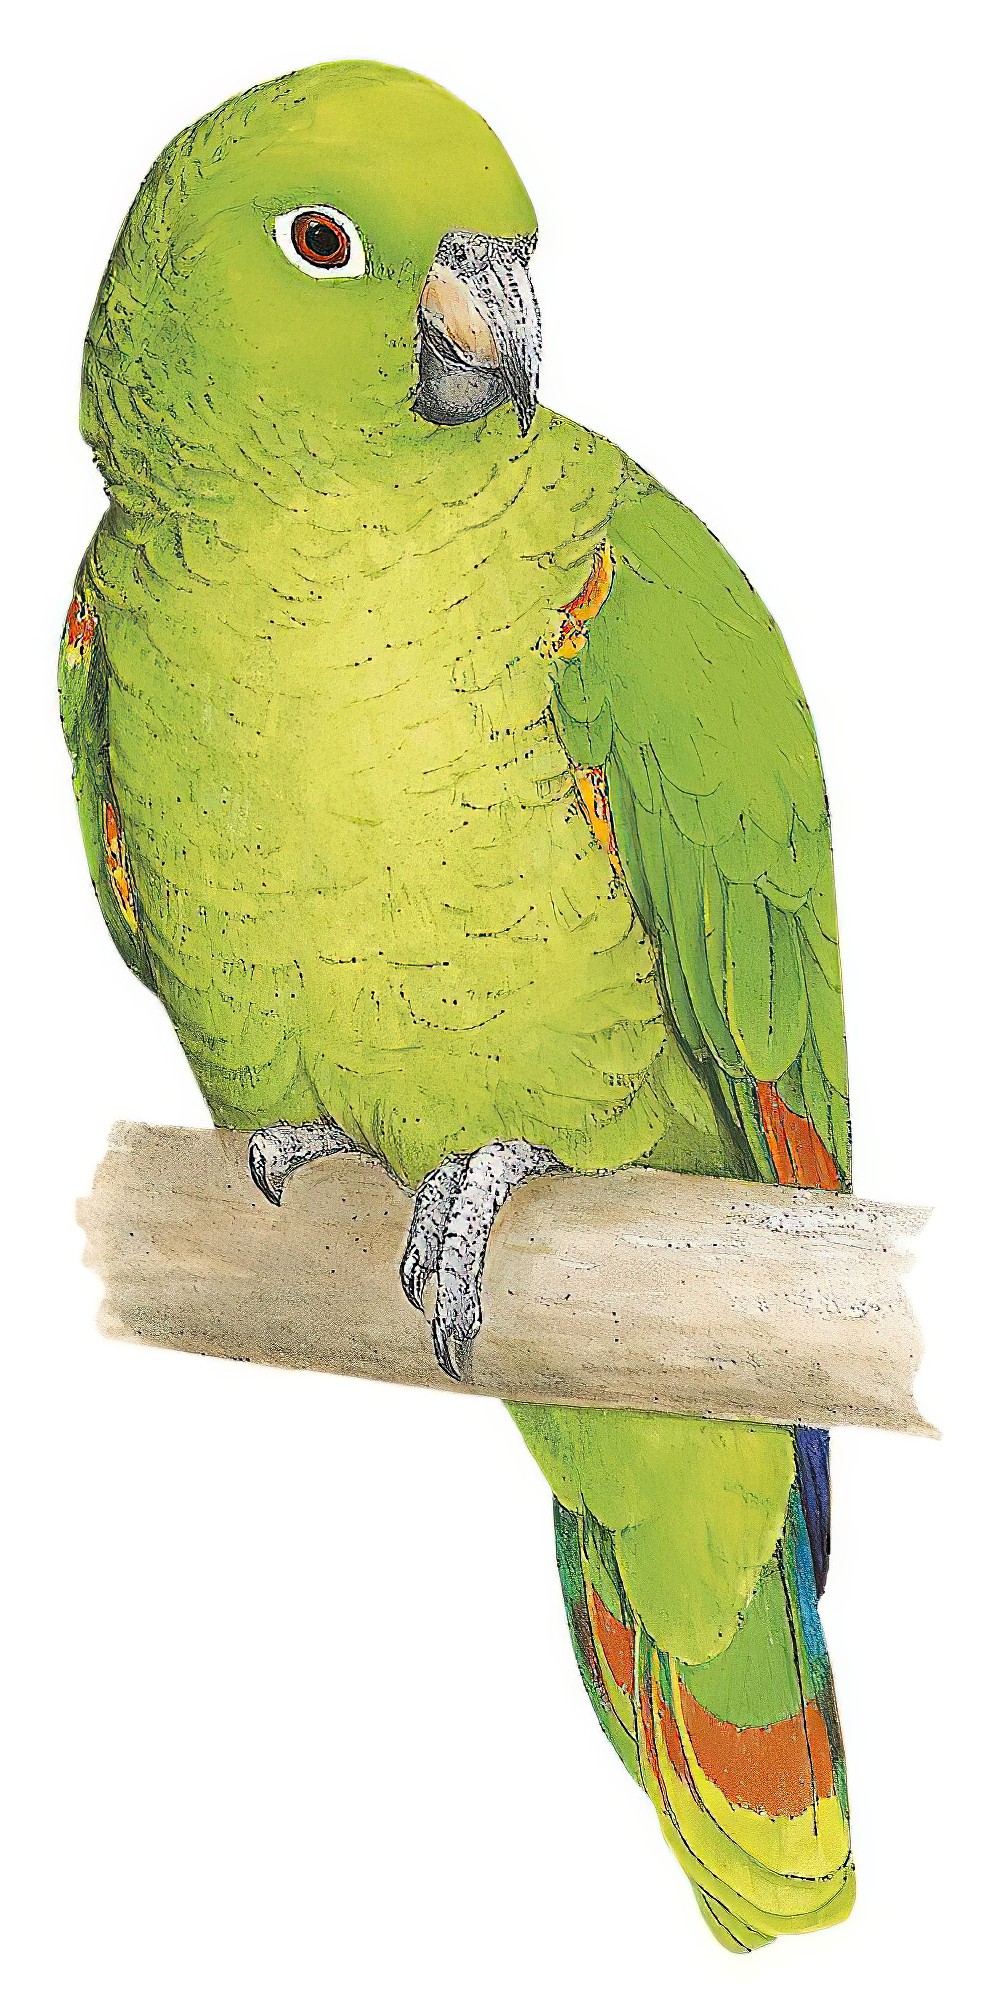 Scaly-naped Parrot / Amazona mercenarius